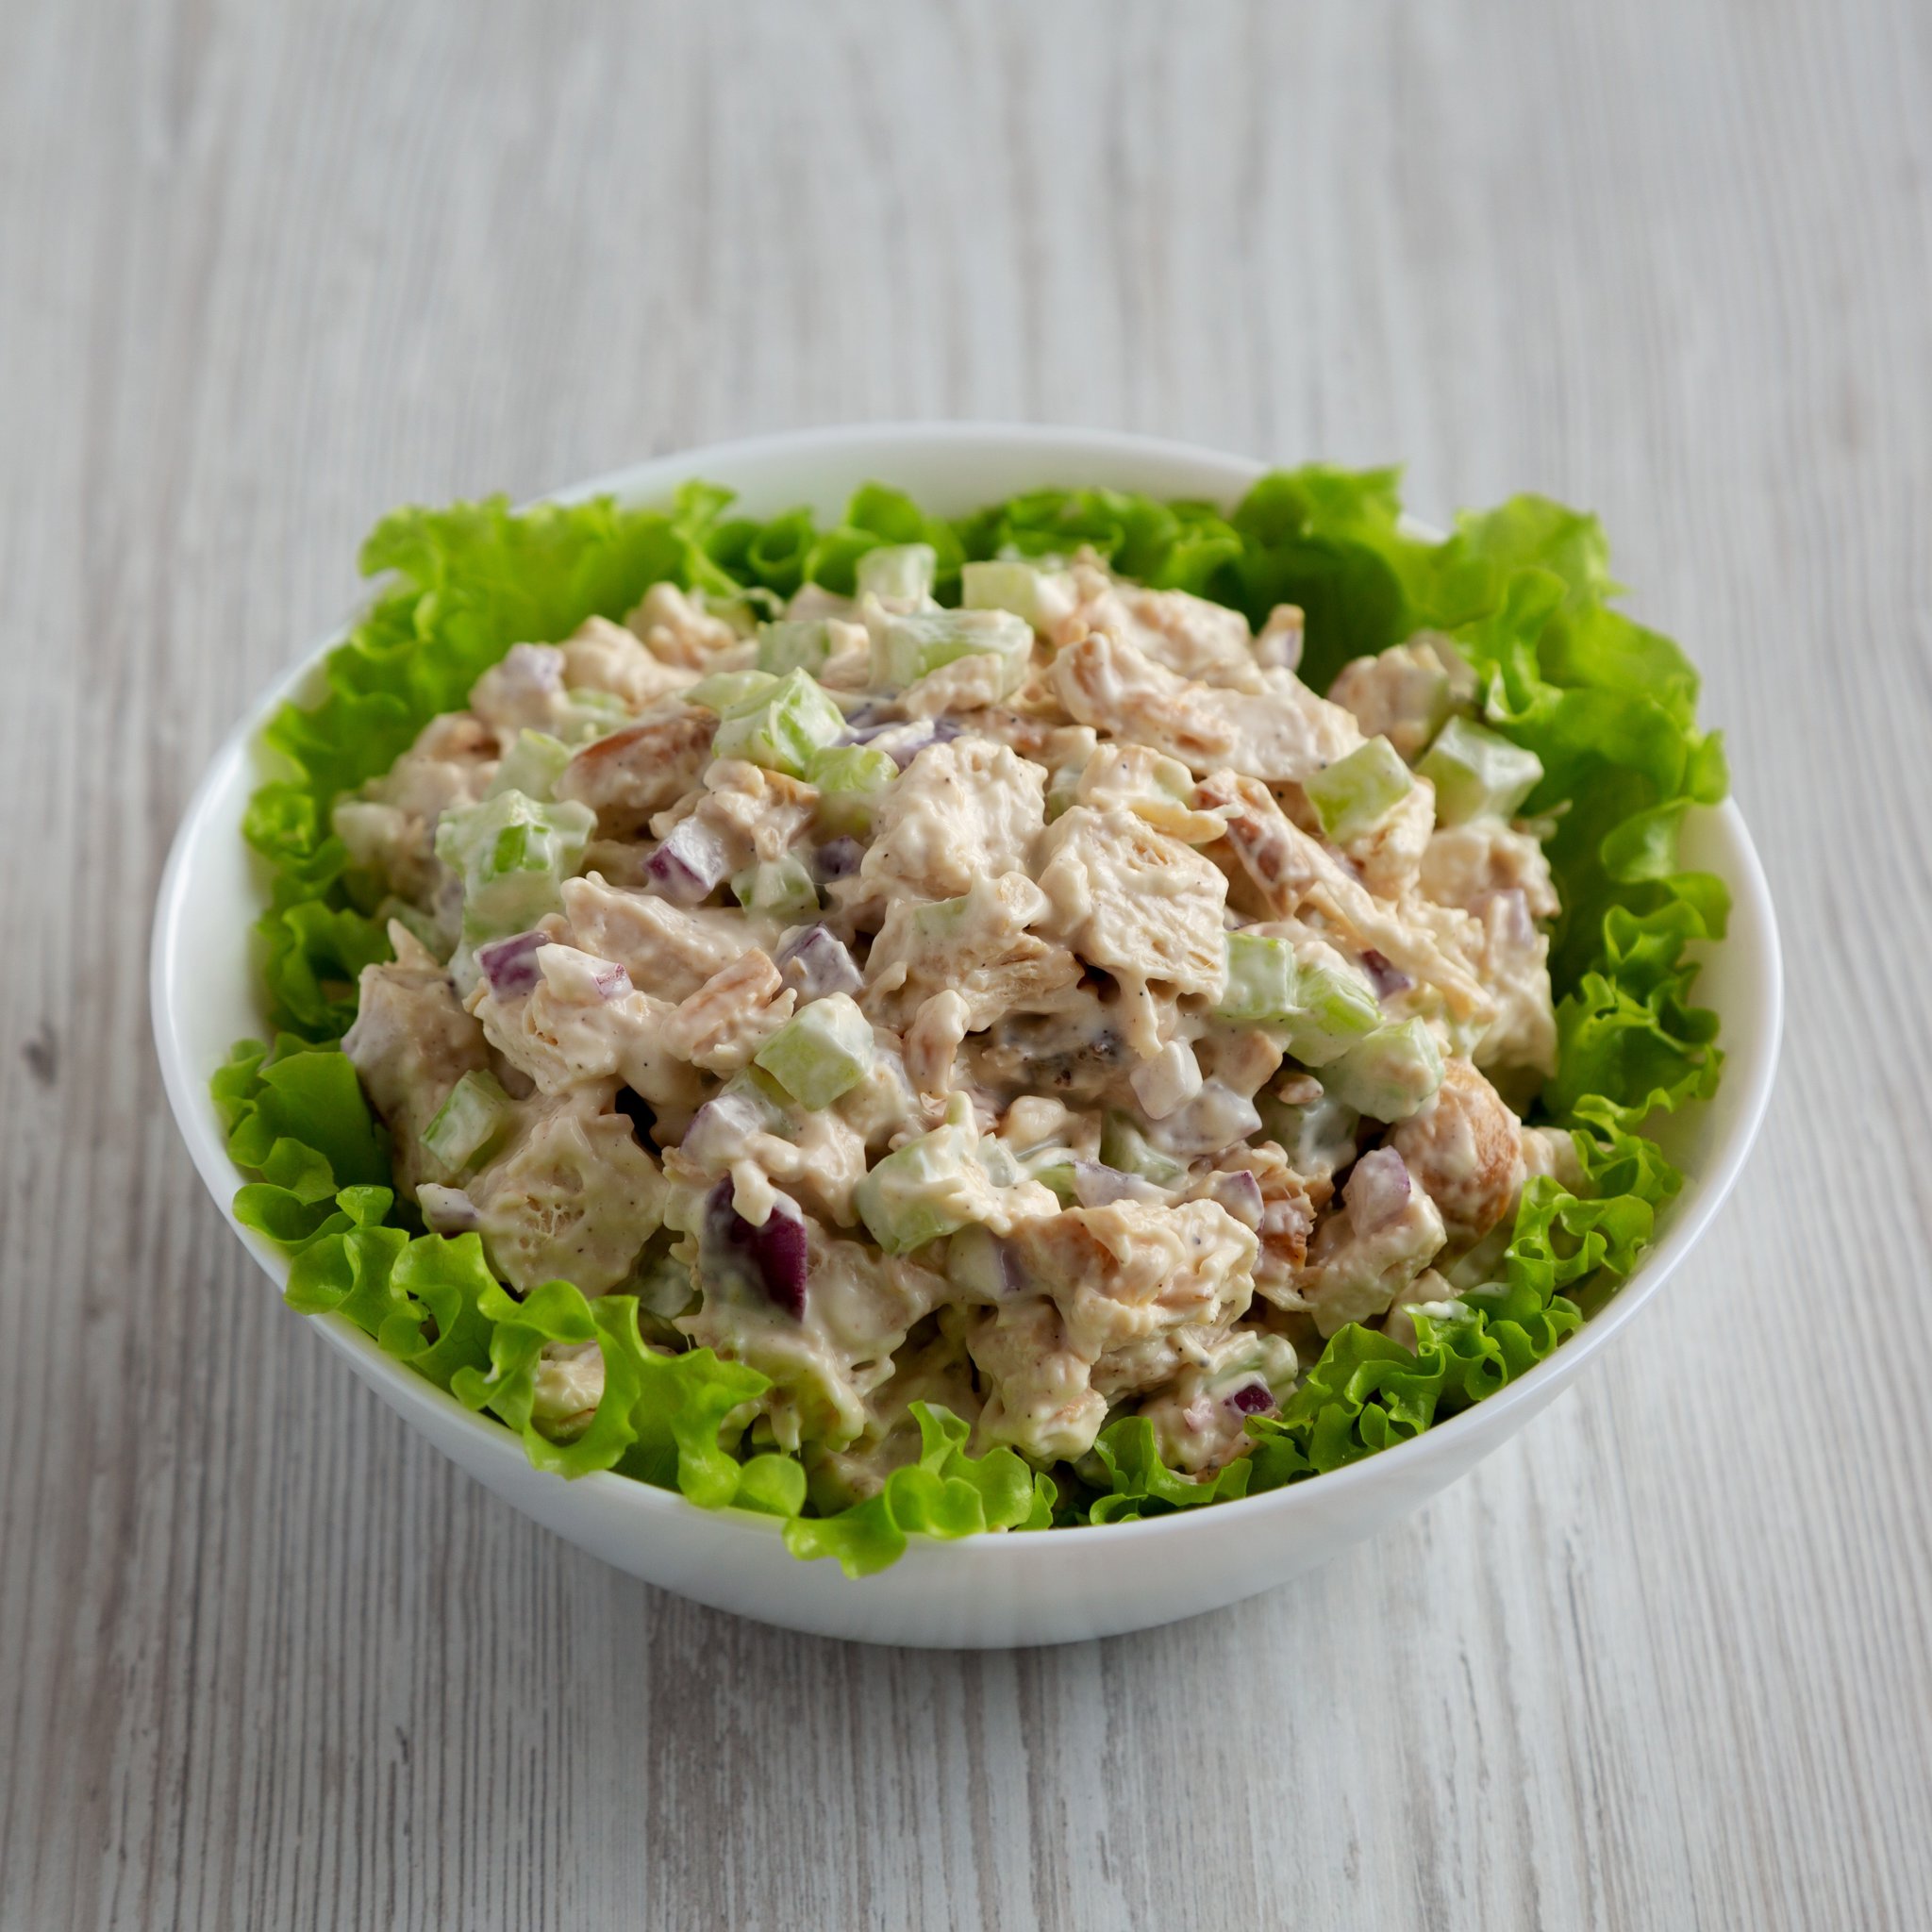 Picture of Original Chicken Salad (GF)